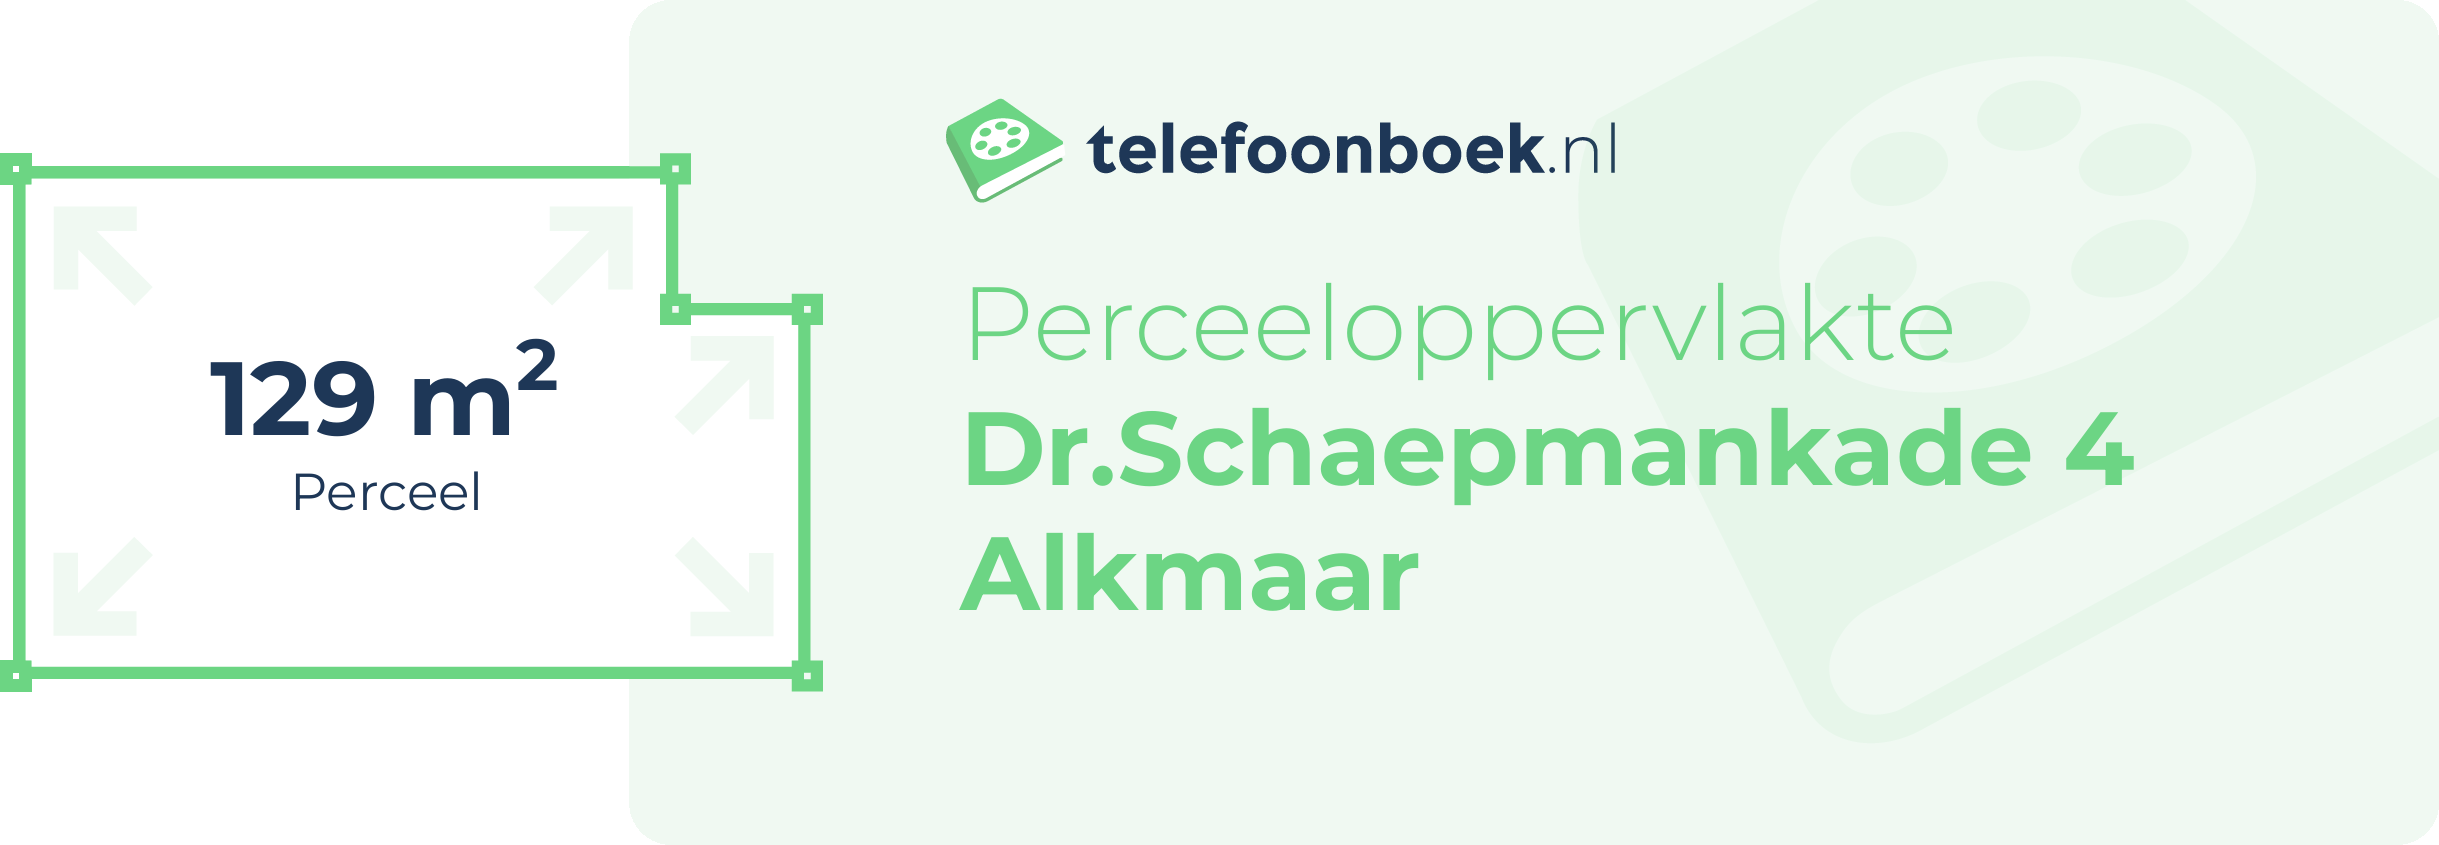 Perceeloppervlakte Dr.Schaepmankade 4 Alkmaar